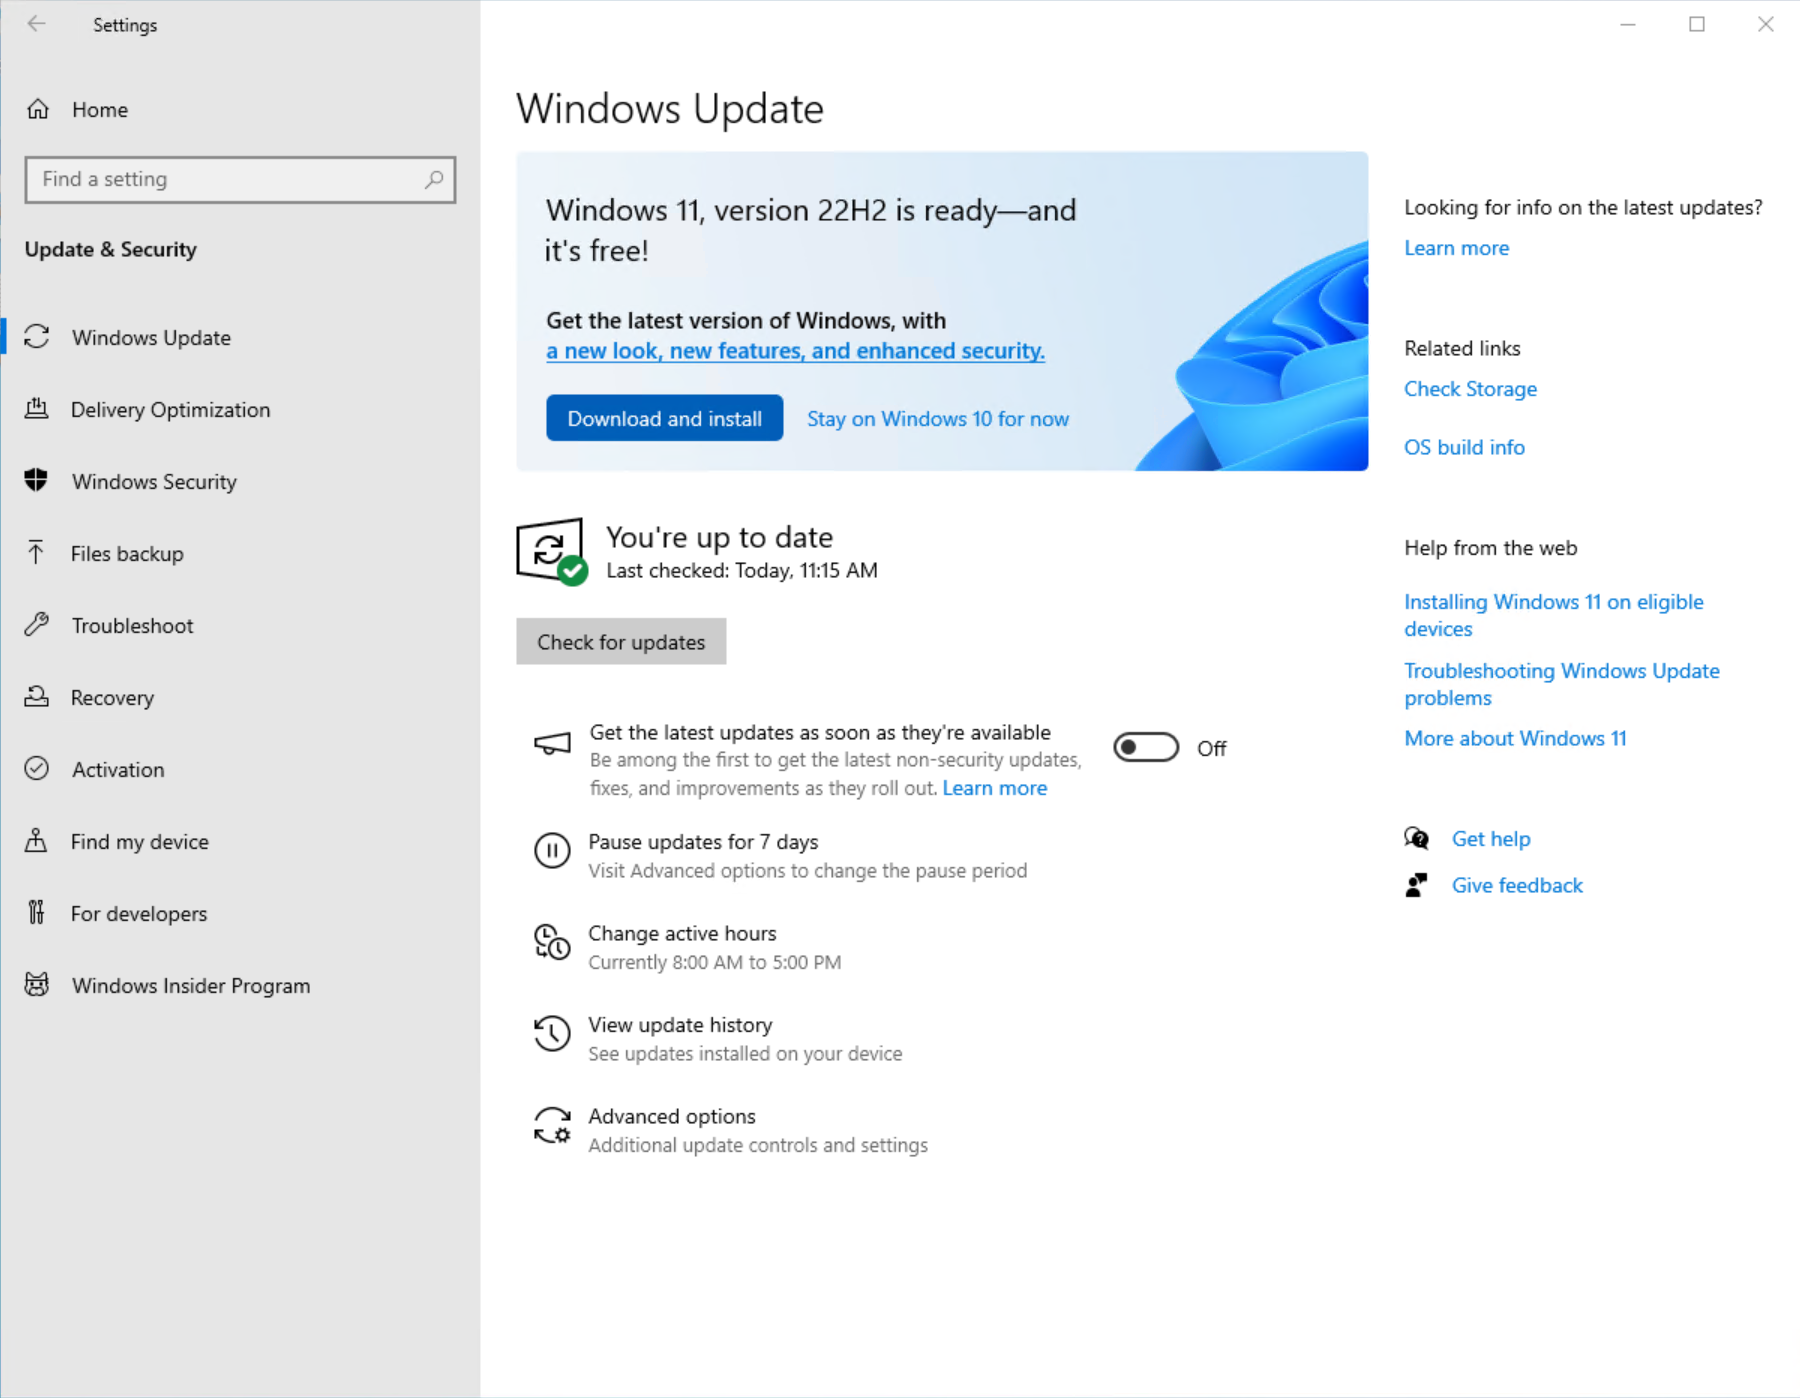 Στιγμιότυπο οθόνης της σελίδας Windows Update στις Ρυθμίσεις που δείχνει ότι Windows 11 είναι έτοιμη για λήψη και εγκατάσταση.